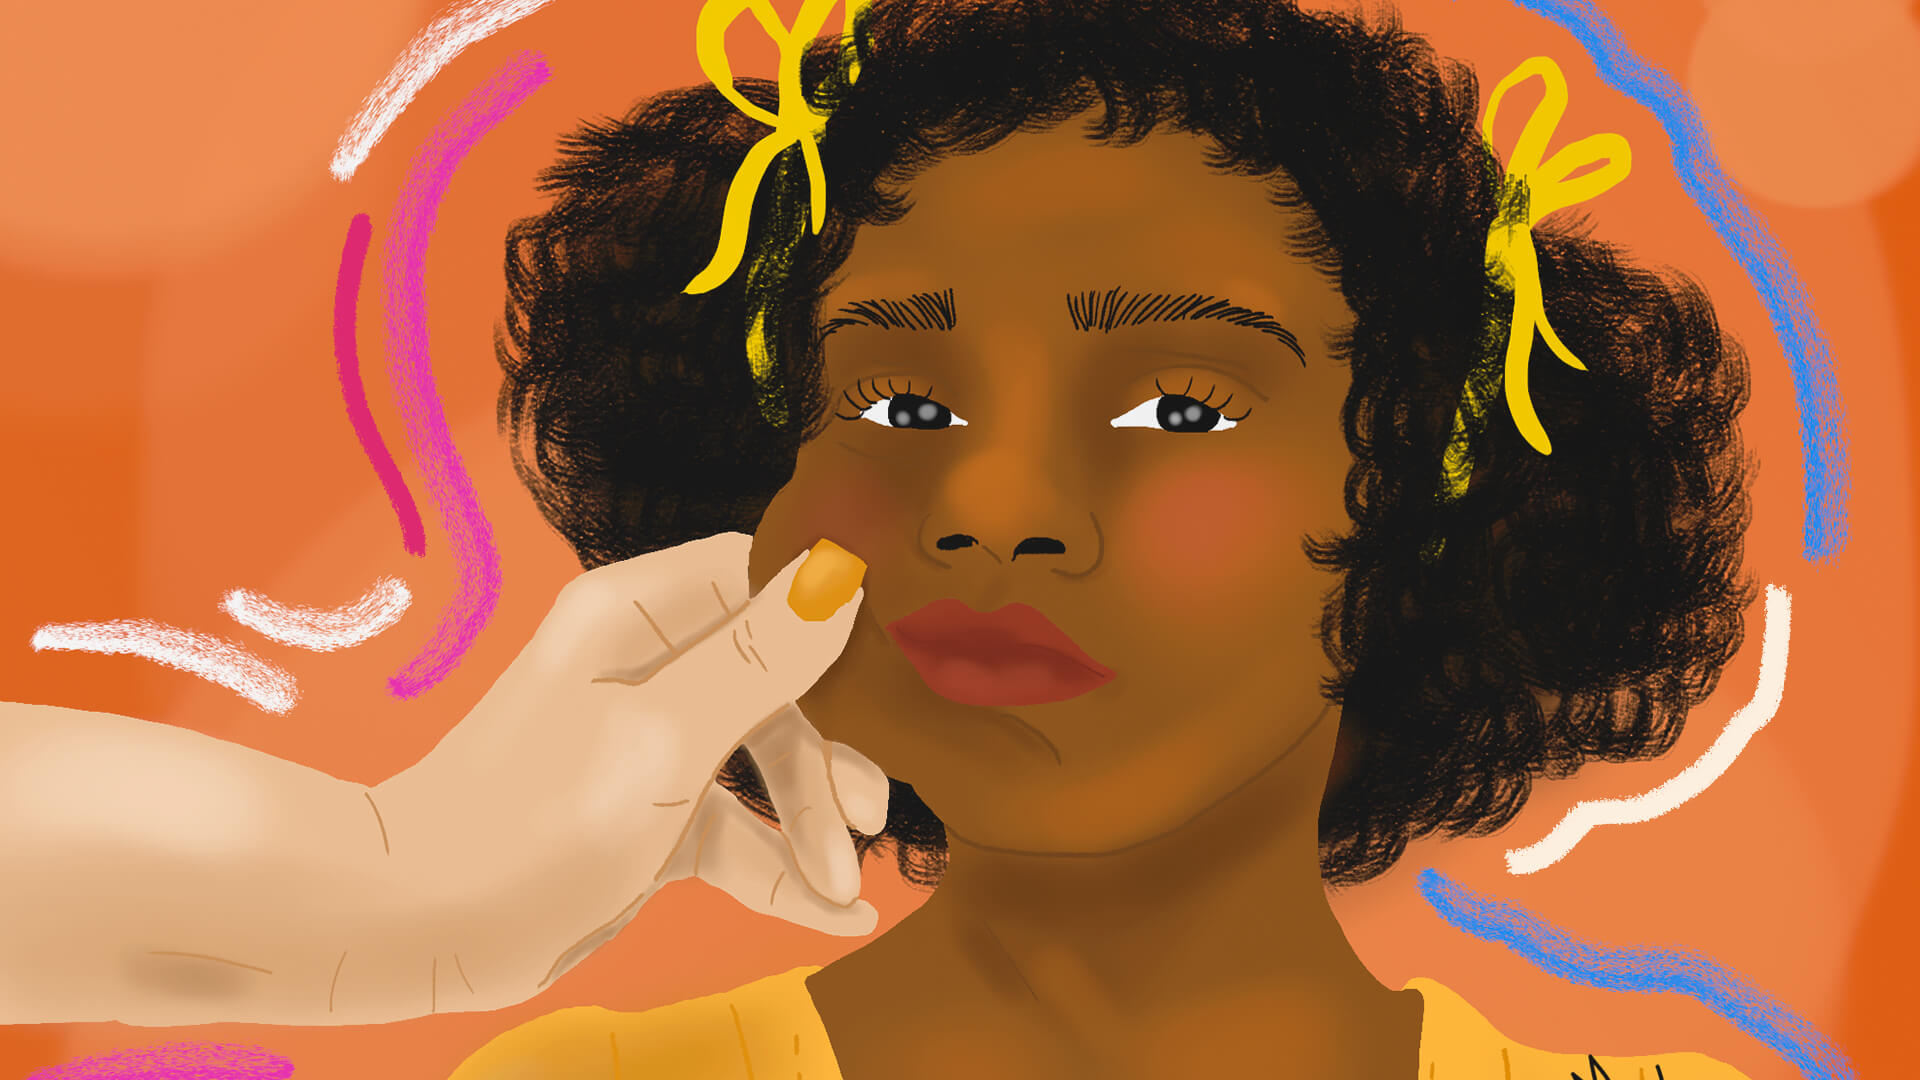 Ilustração de uma menina negra. Uma mão branca puxa sua bochecha, a deixando desconfortável. A imagem possui intervenções de rabiscos coloridos.